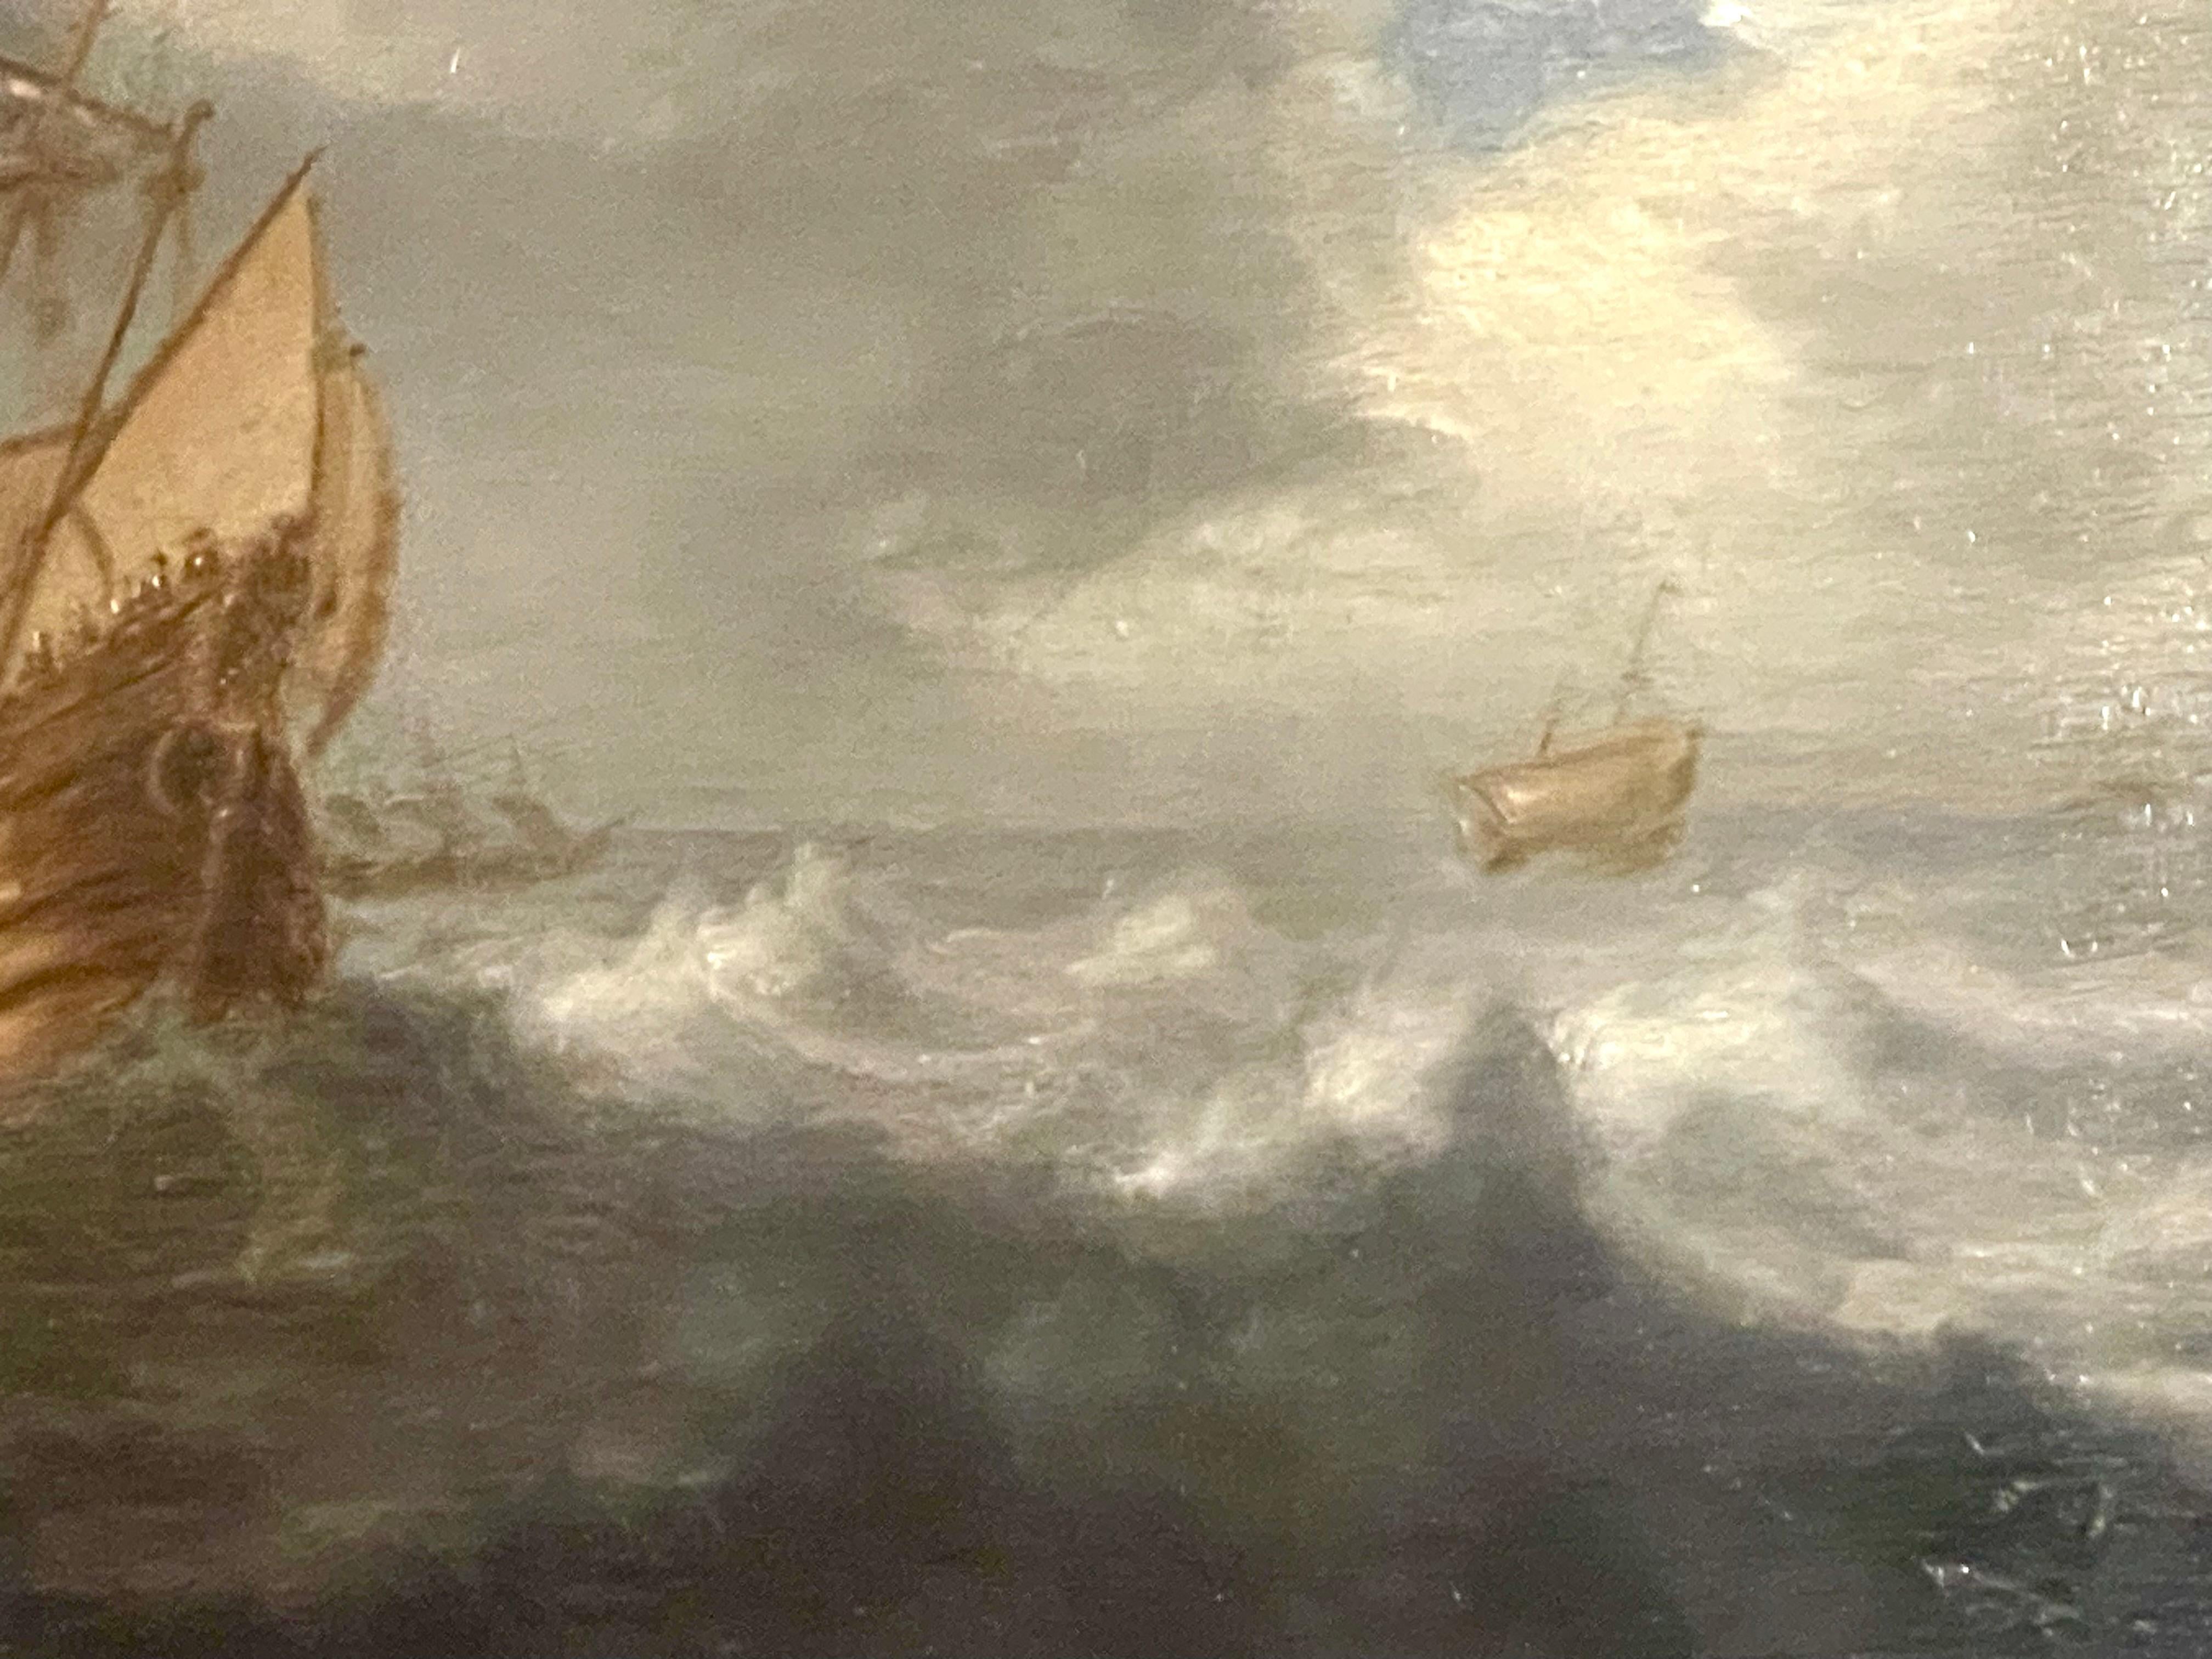 Holländische Schule, 17. Jahrhundert, Ölgemälde auf Karton, das ein goldenes Schiff auf blauer See mit weißen Wellenkämmen vor einem stürmischen Wolkenhimmel zeigt.  In der Ferne sind weitere Schiffe zu sehen, und ein Fleck blauer Himmel lockert die